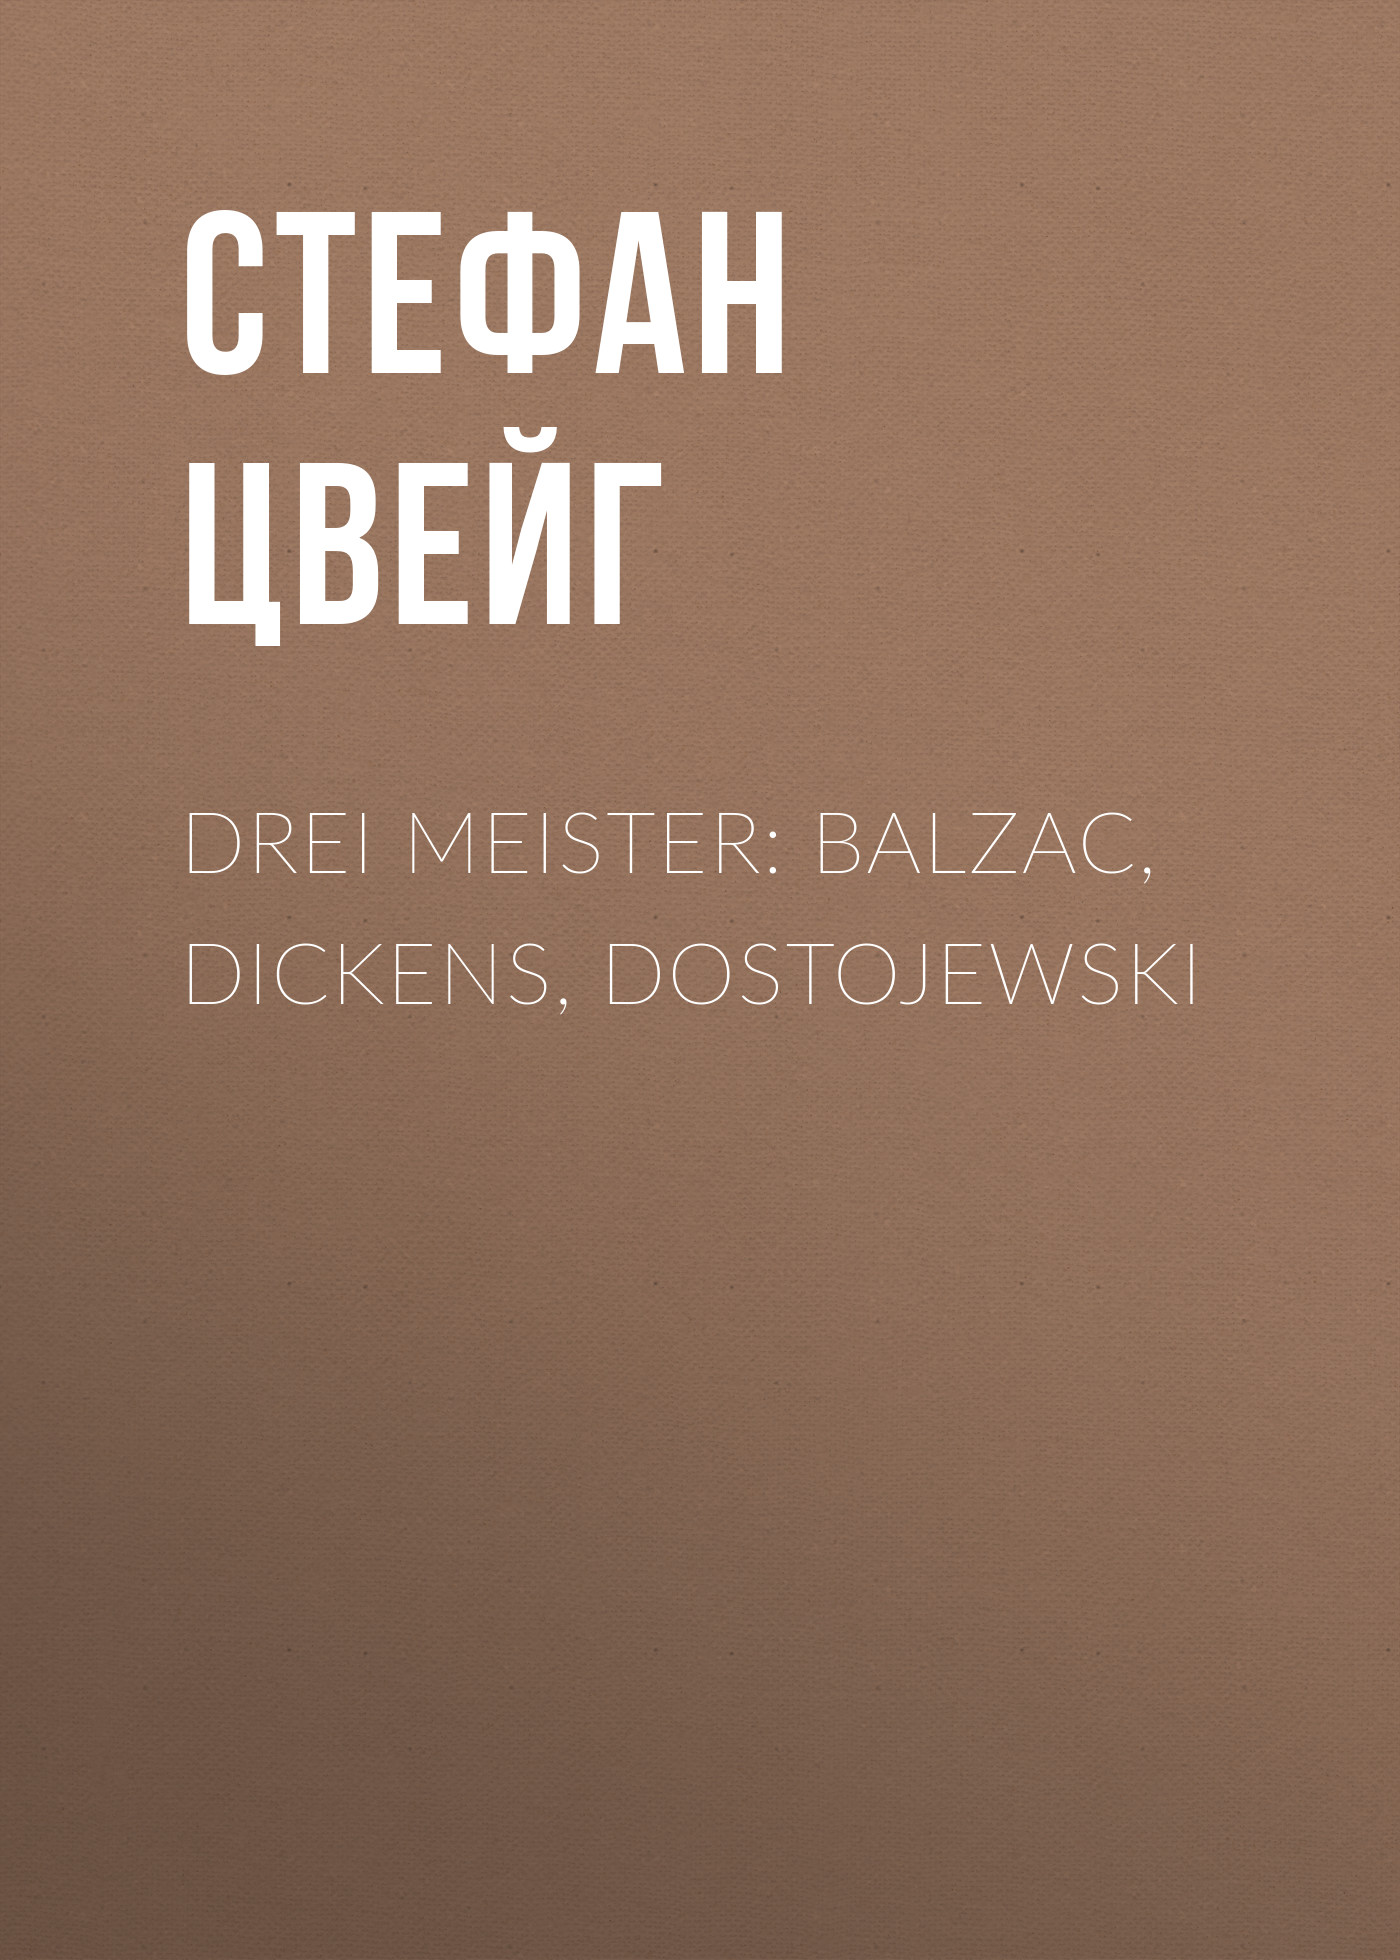 Книга Drei Meister: Balzac, Dickens, Dostojewski из серии , созданная Stefan Zweig, может относится к жанру Биографии и Мемуары, Зарубежная старинная литература. Стоимость электронной книги Drei Meister: Balzac, Dickens, Dostojewski с идентификатором 36324076 составляет 0 руб.